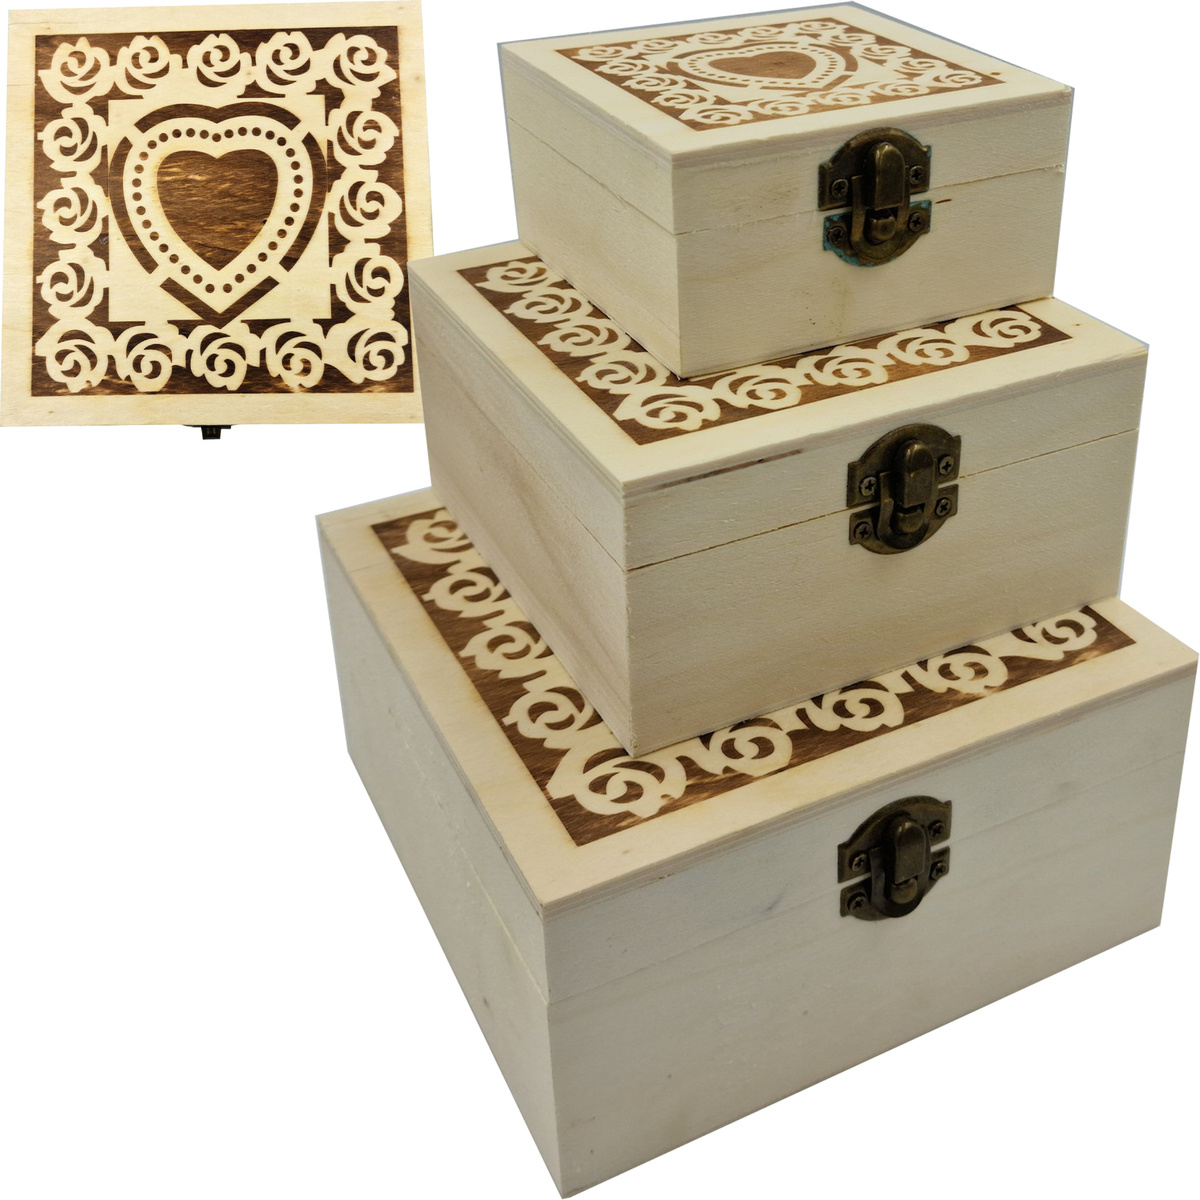 Zestaw 3 sztuk pudełek drewnianych wypalanych 16x16 cm